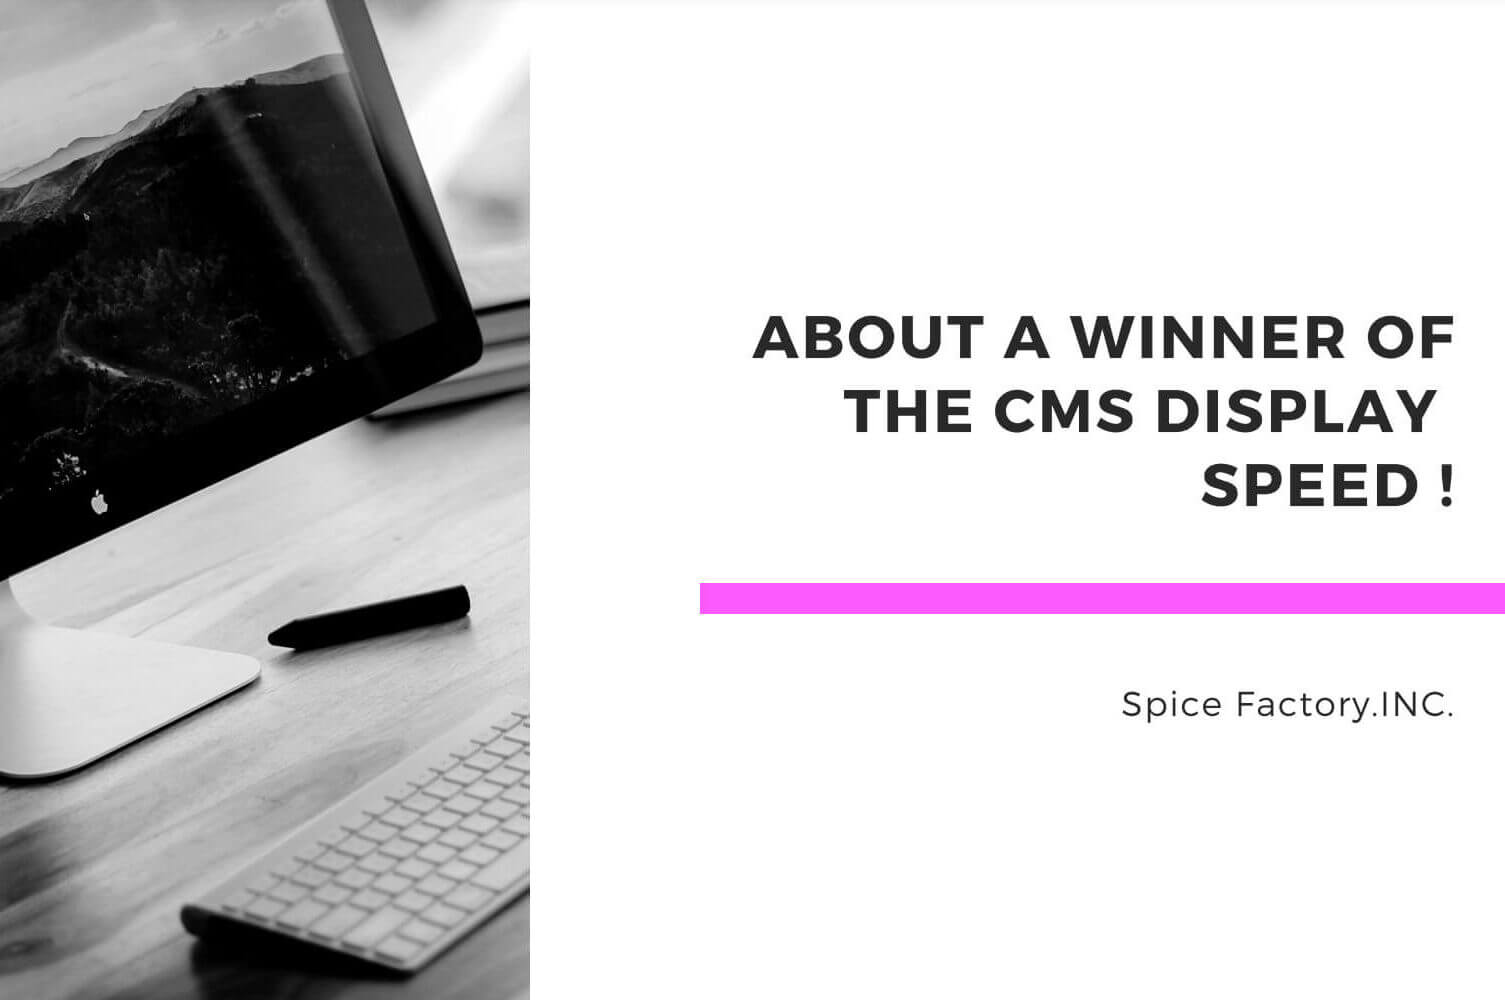 CMSプロレス ウェブサイト表示速度王決定戦にて、スパイスファクトリー泰がWordPressで挑み優勝しました！